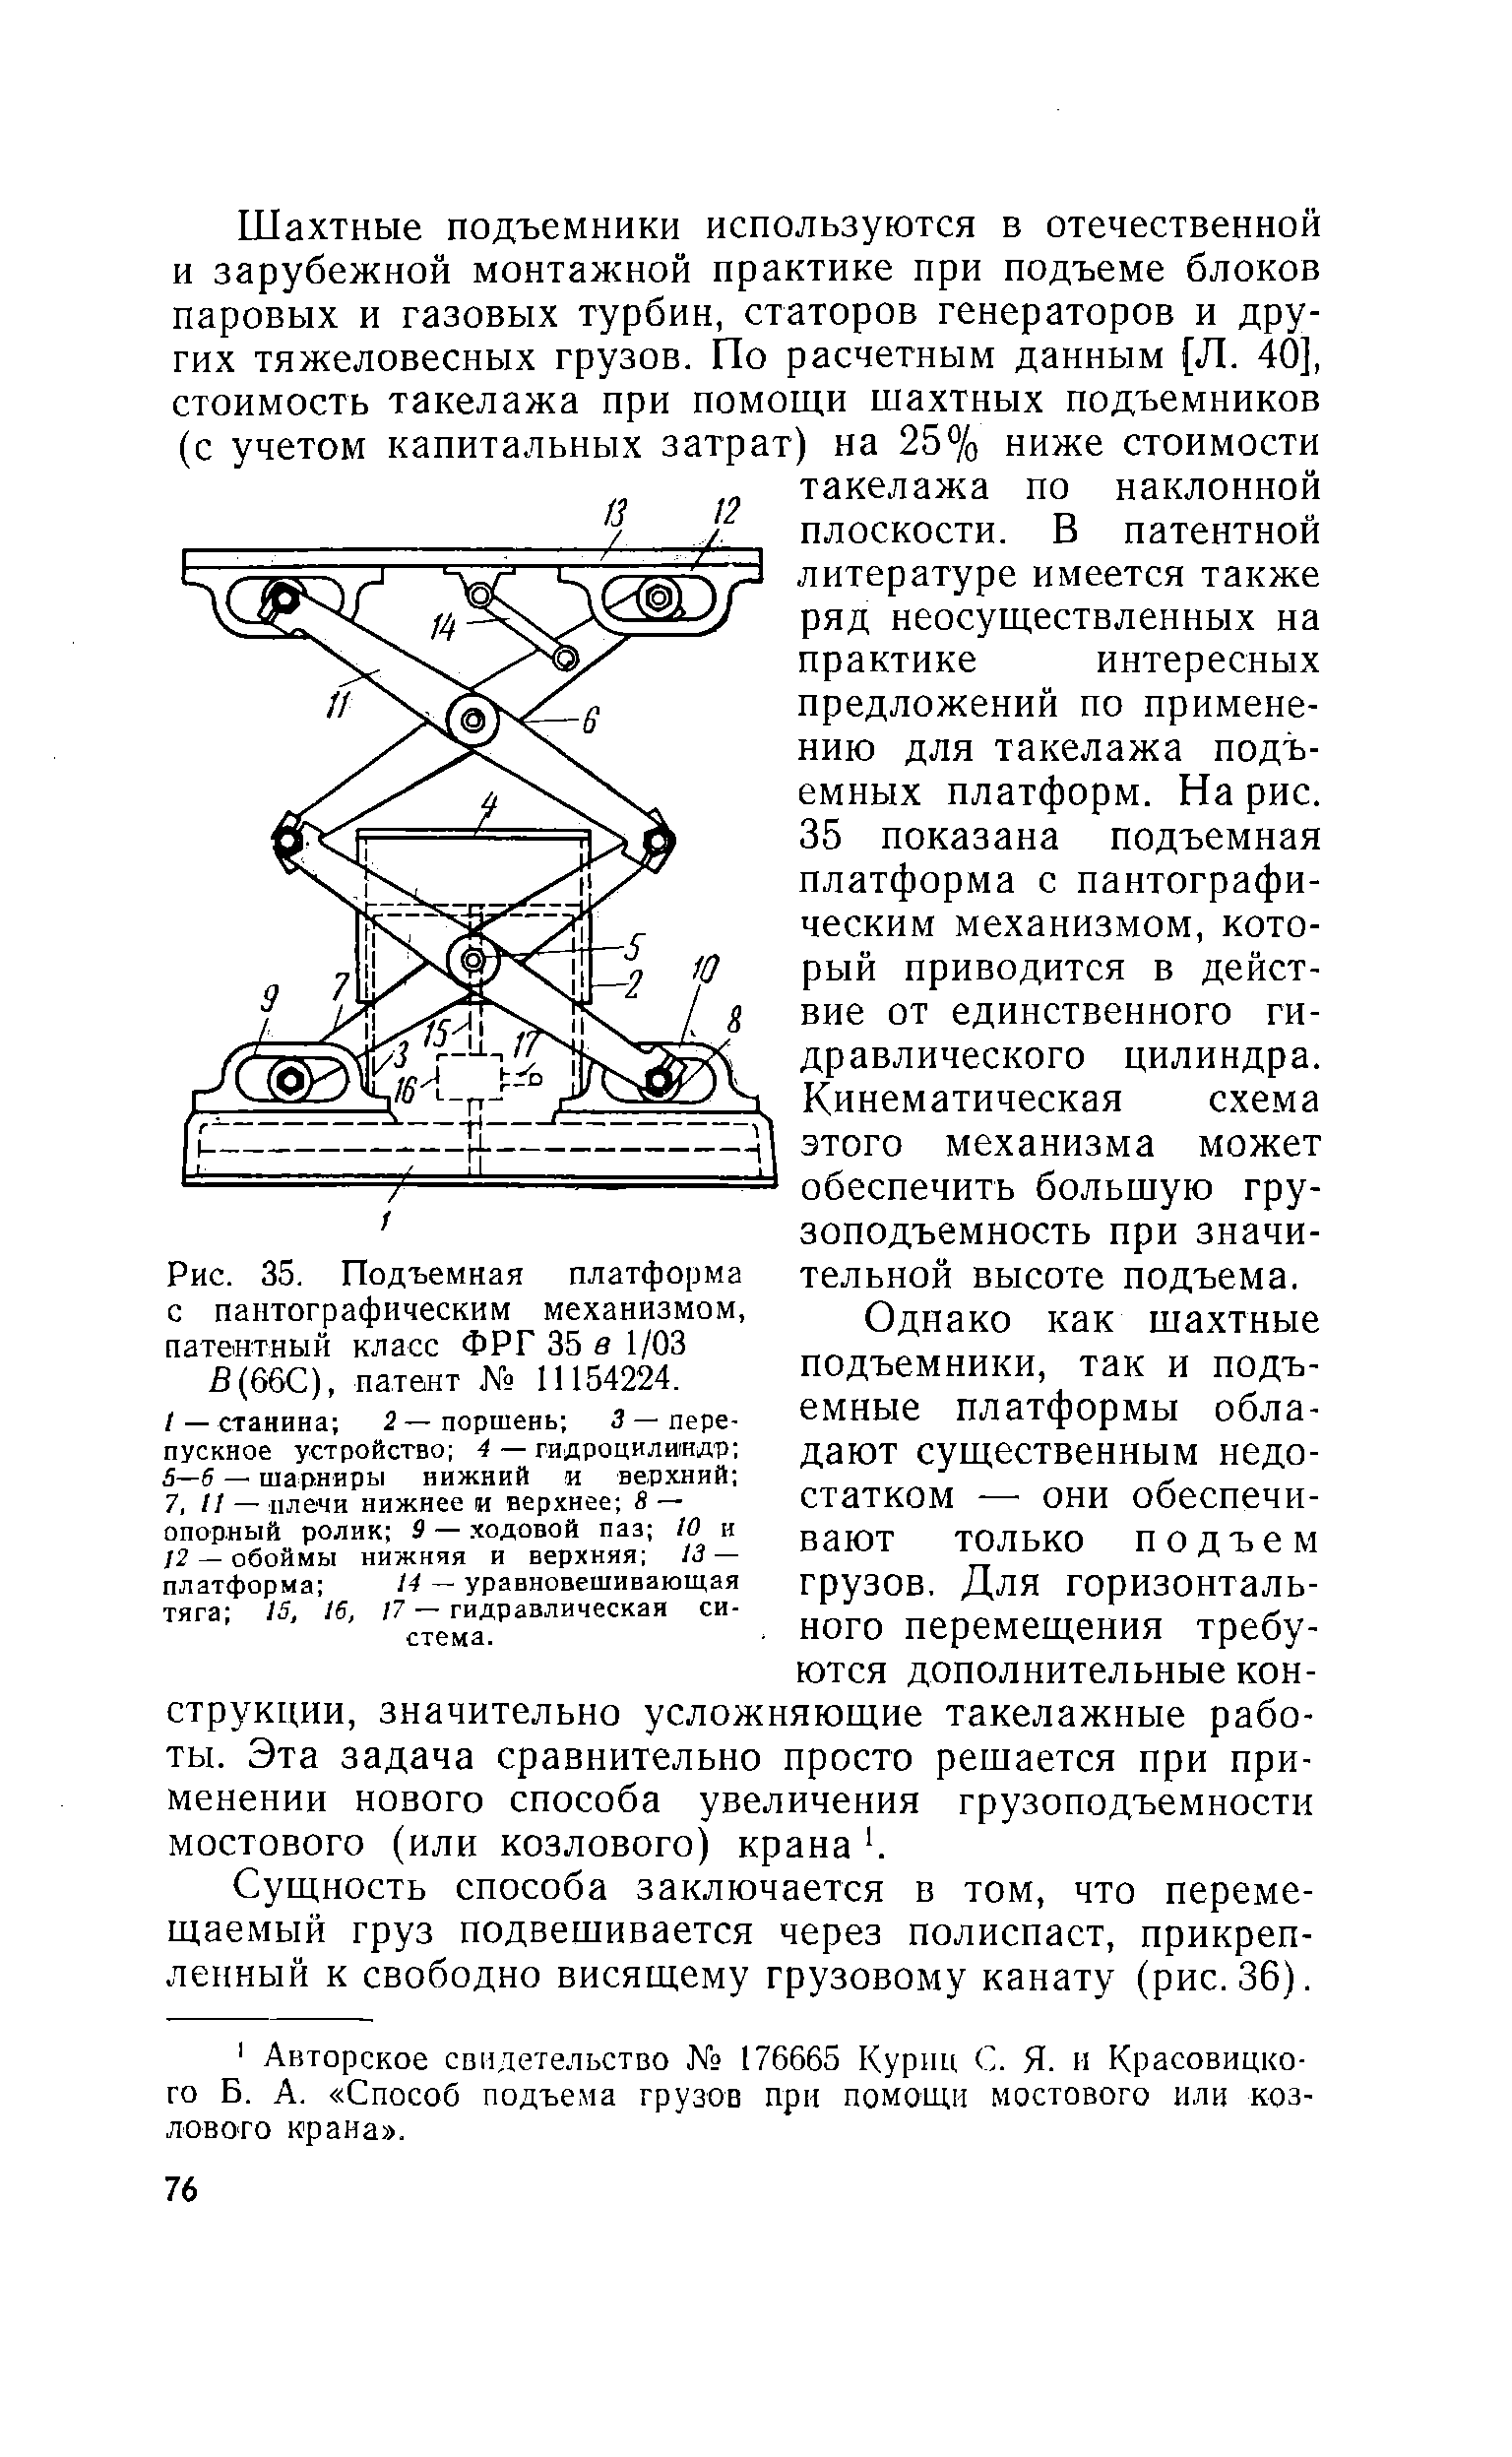 Рис. 35. Подъемная платформа с пантографическим механизмом, патентный класс ФРГ 35 в 1/03 fi(66 ), патент № 11154224.
